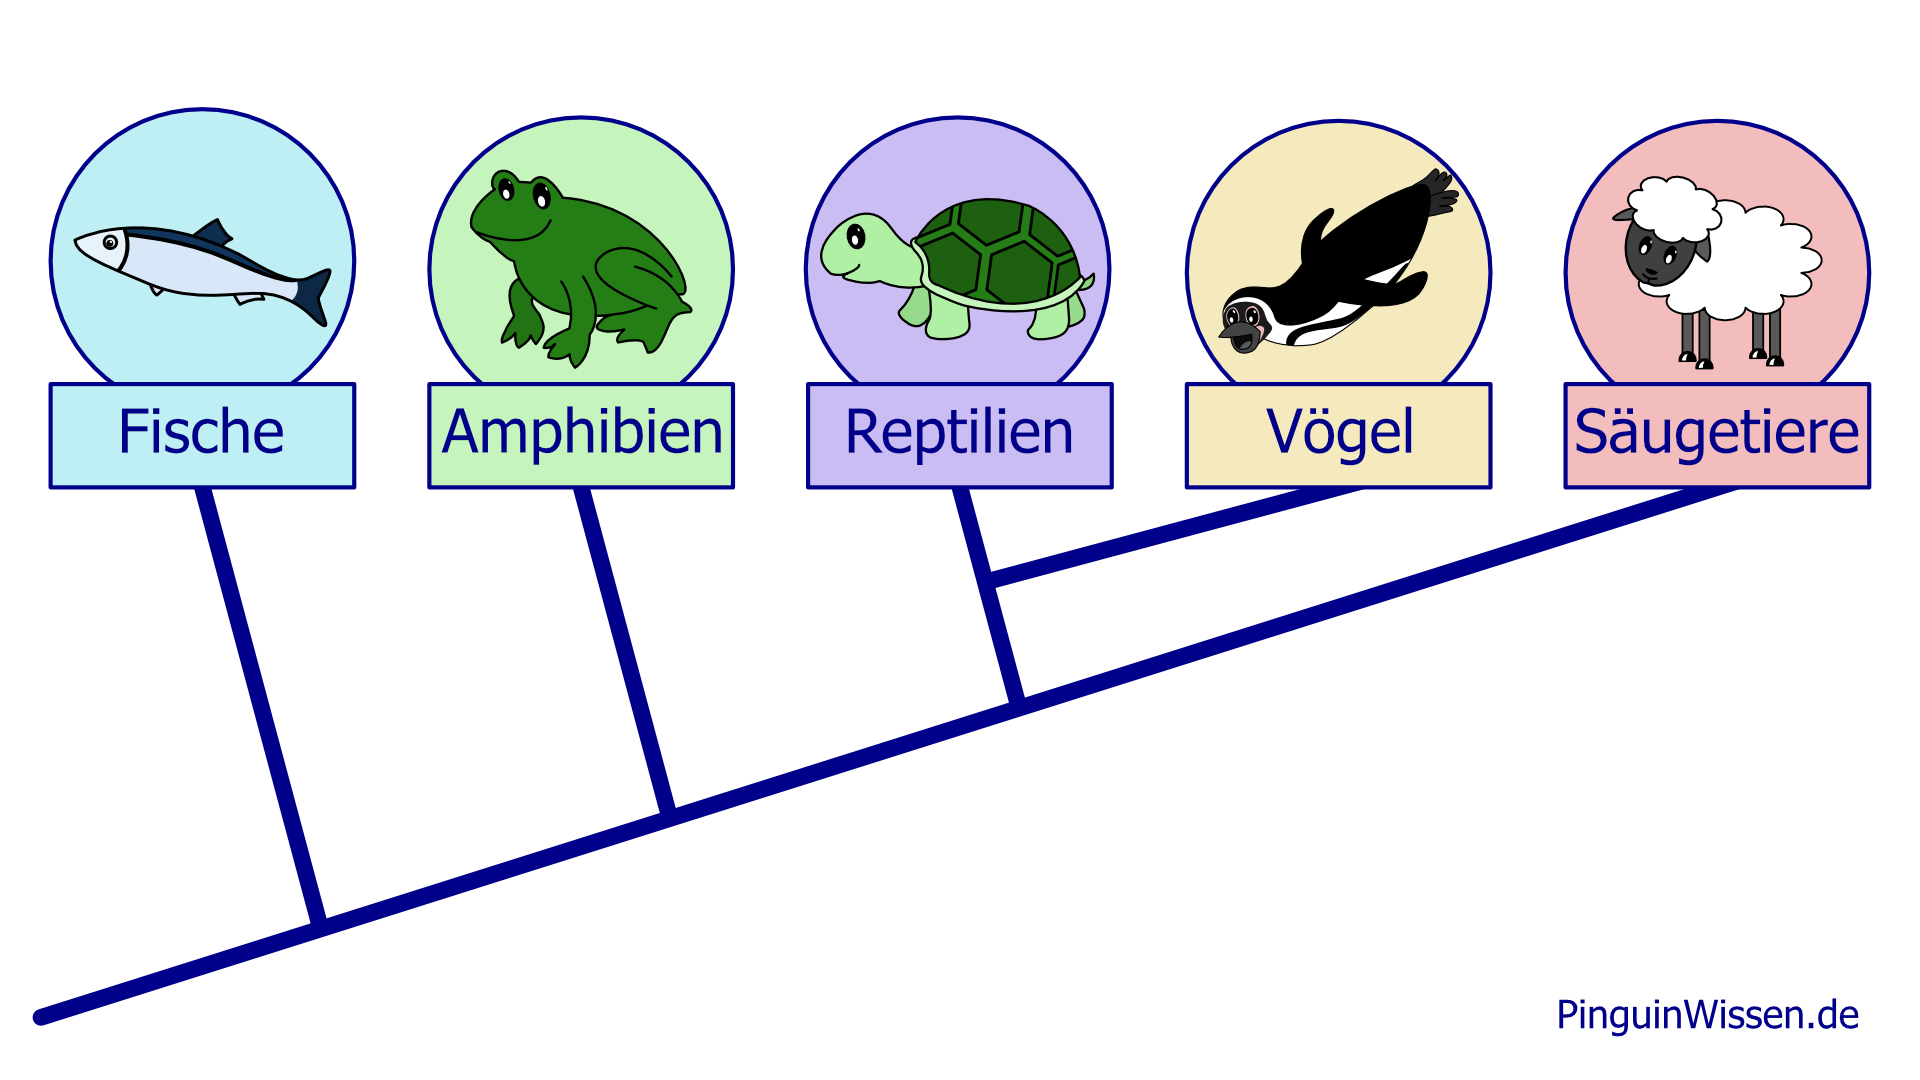 Stammbaum der Wirbeltiere: Fische, Amphibien, Reptilien, Vögel, Säugetiere.